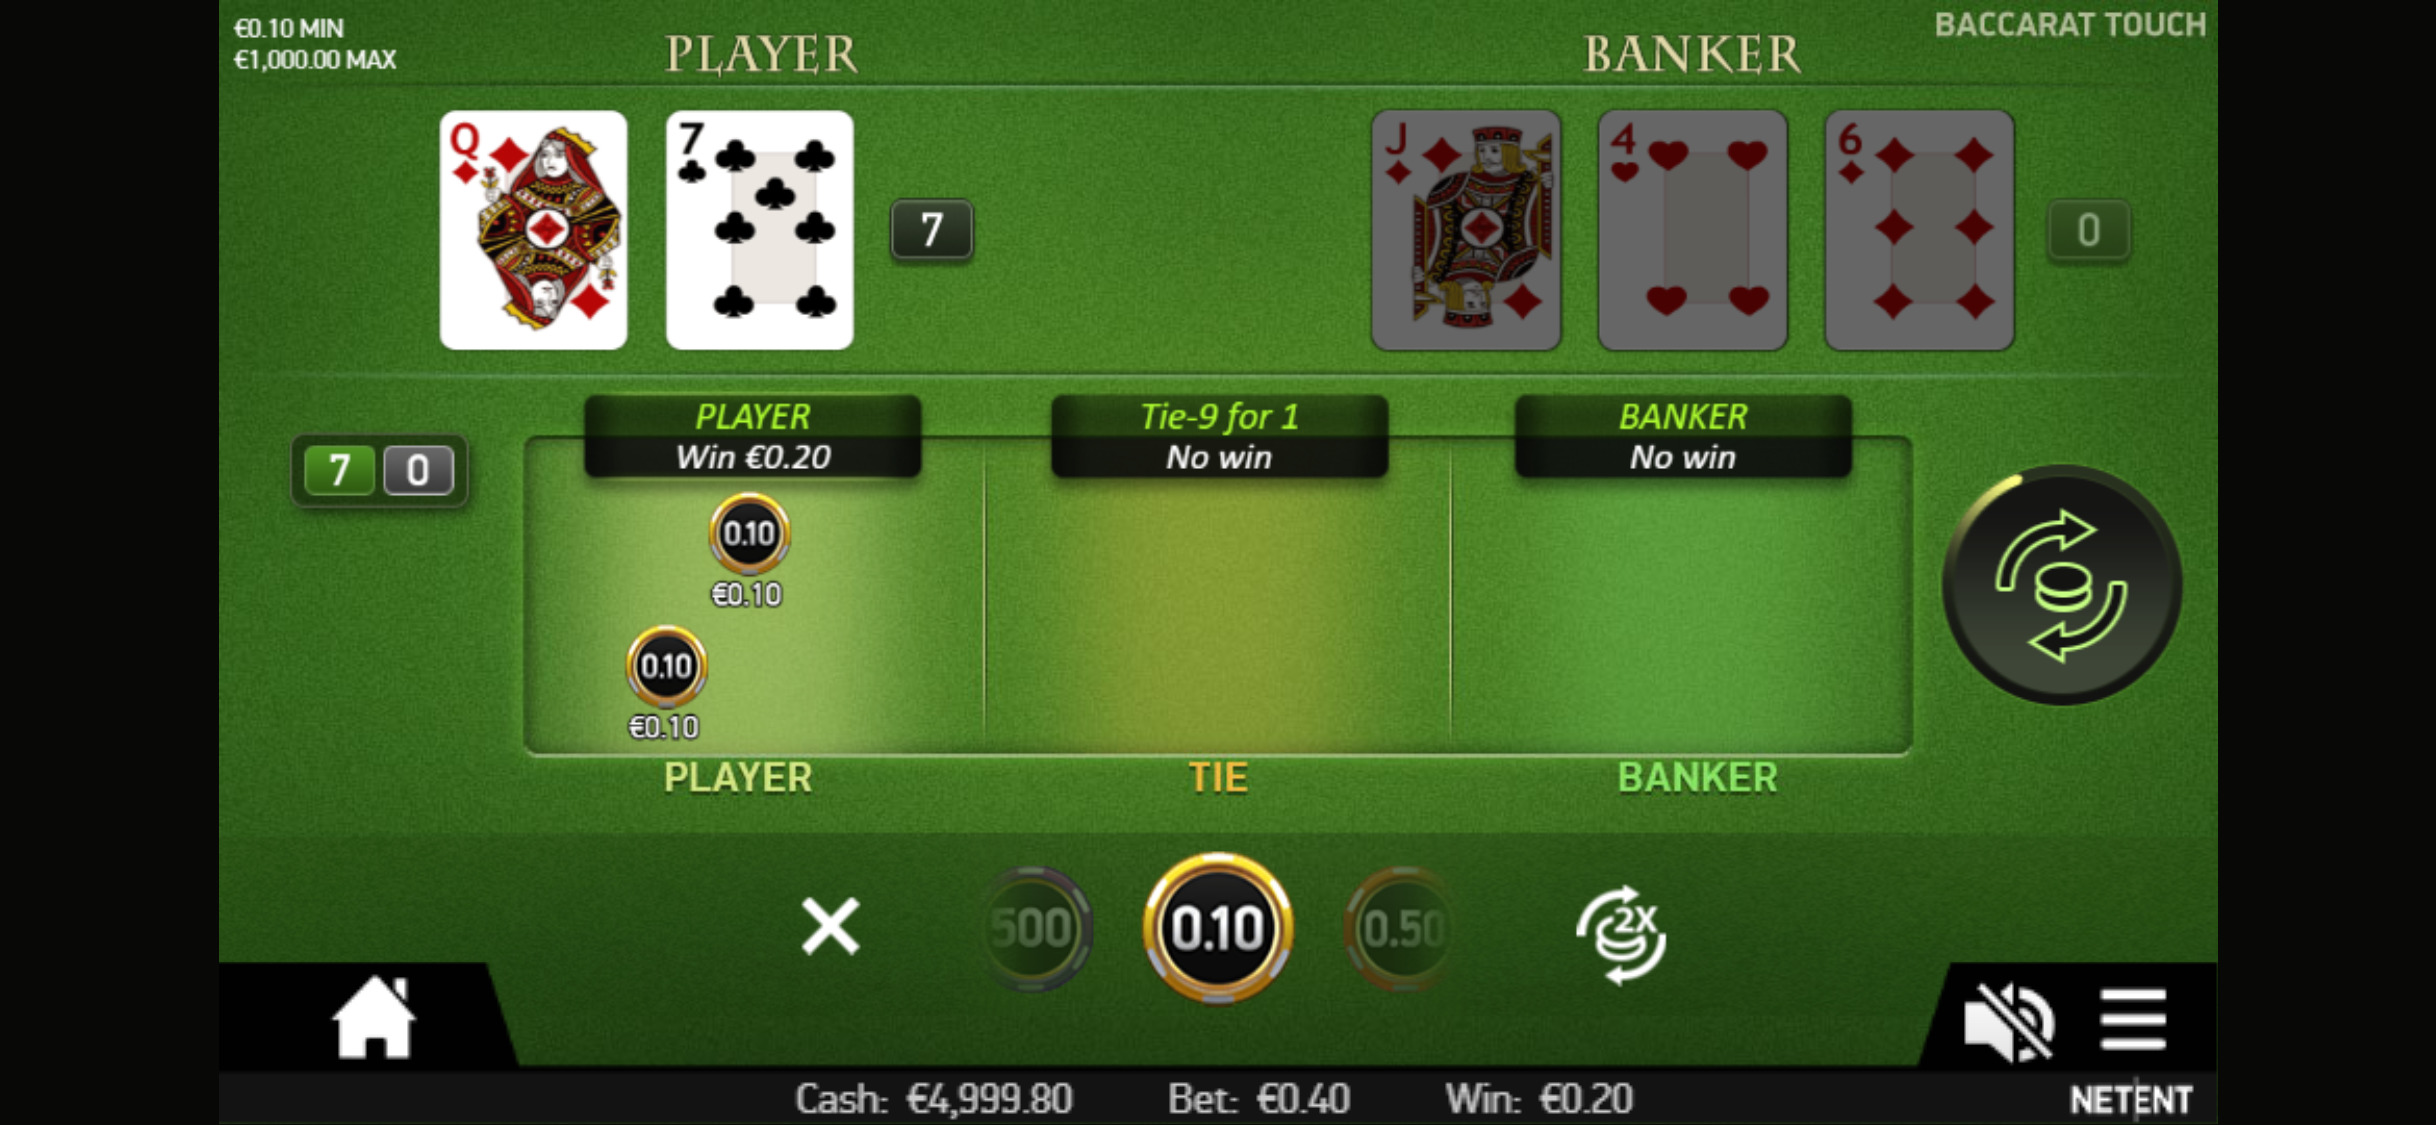 Genesis Casino Mobile Slots Review